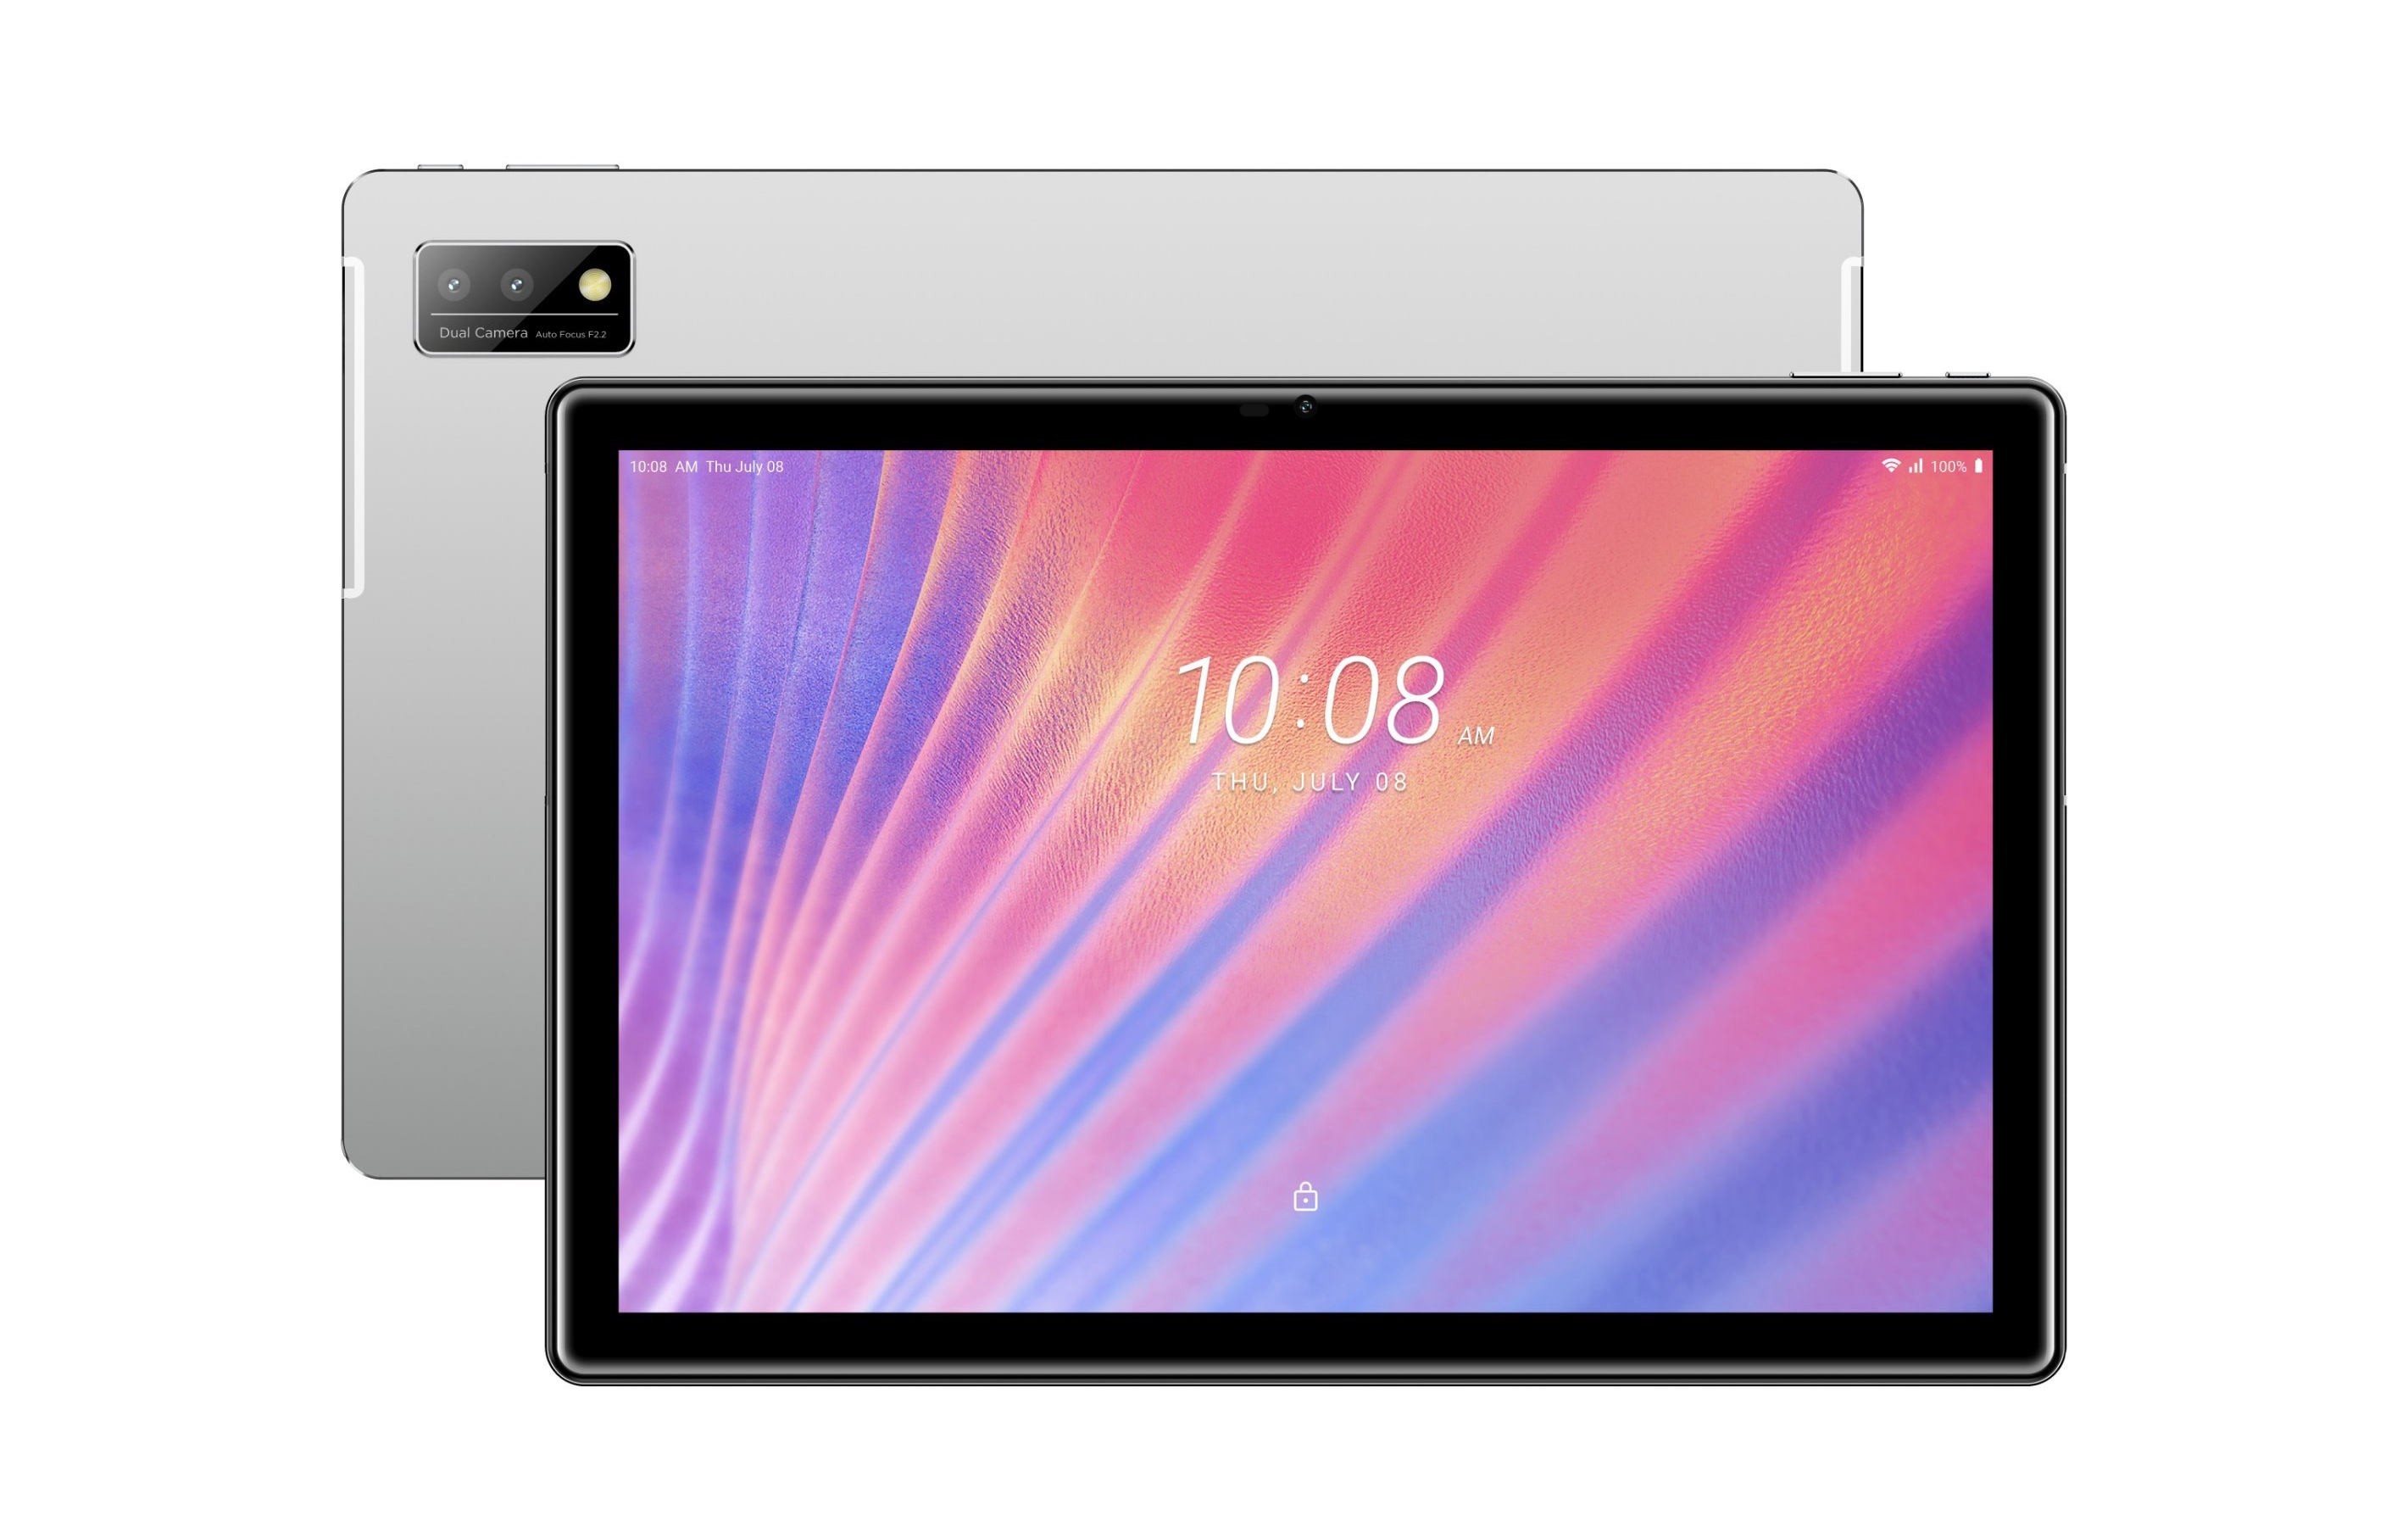 Nieoczekiwanie: HTC pracuje nad tabletem A100 z 10-calowym ekranem FHD, baterią 7000mAh i ceną 200$